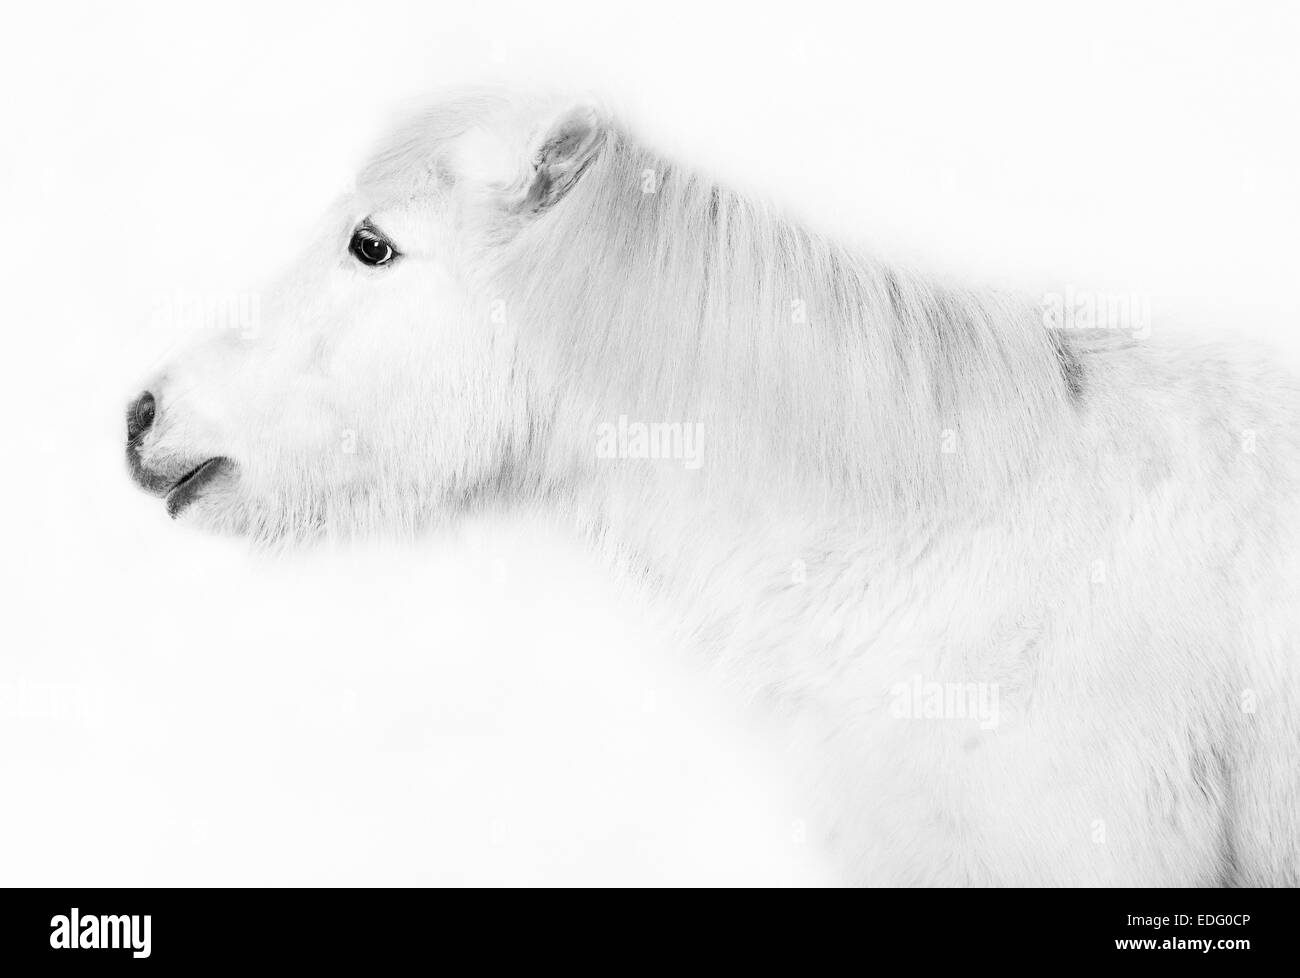 Cavallino bianco ritratto della testa contro uno sfondo bianco Foto Stock